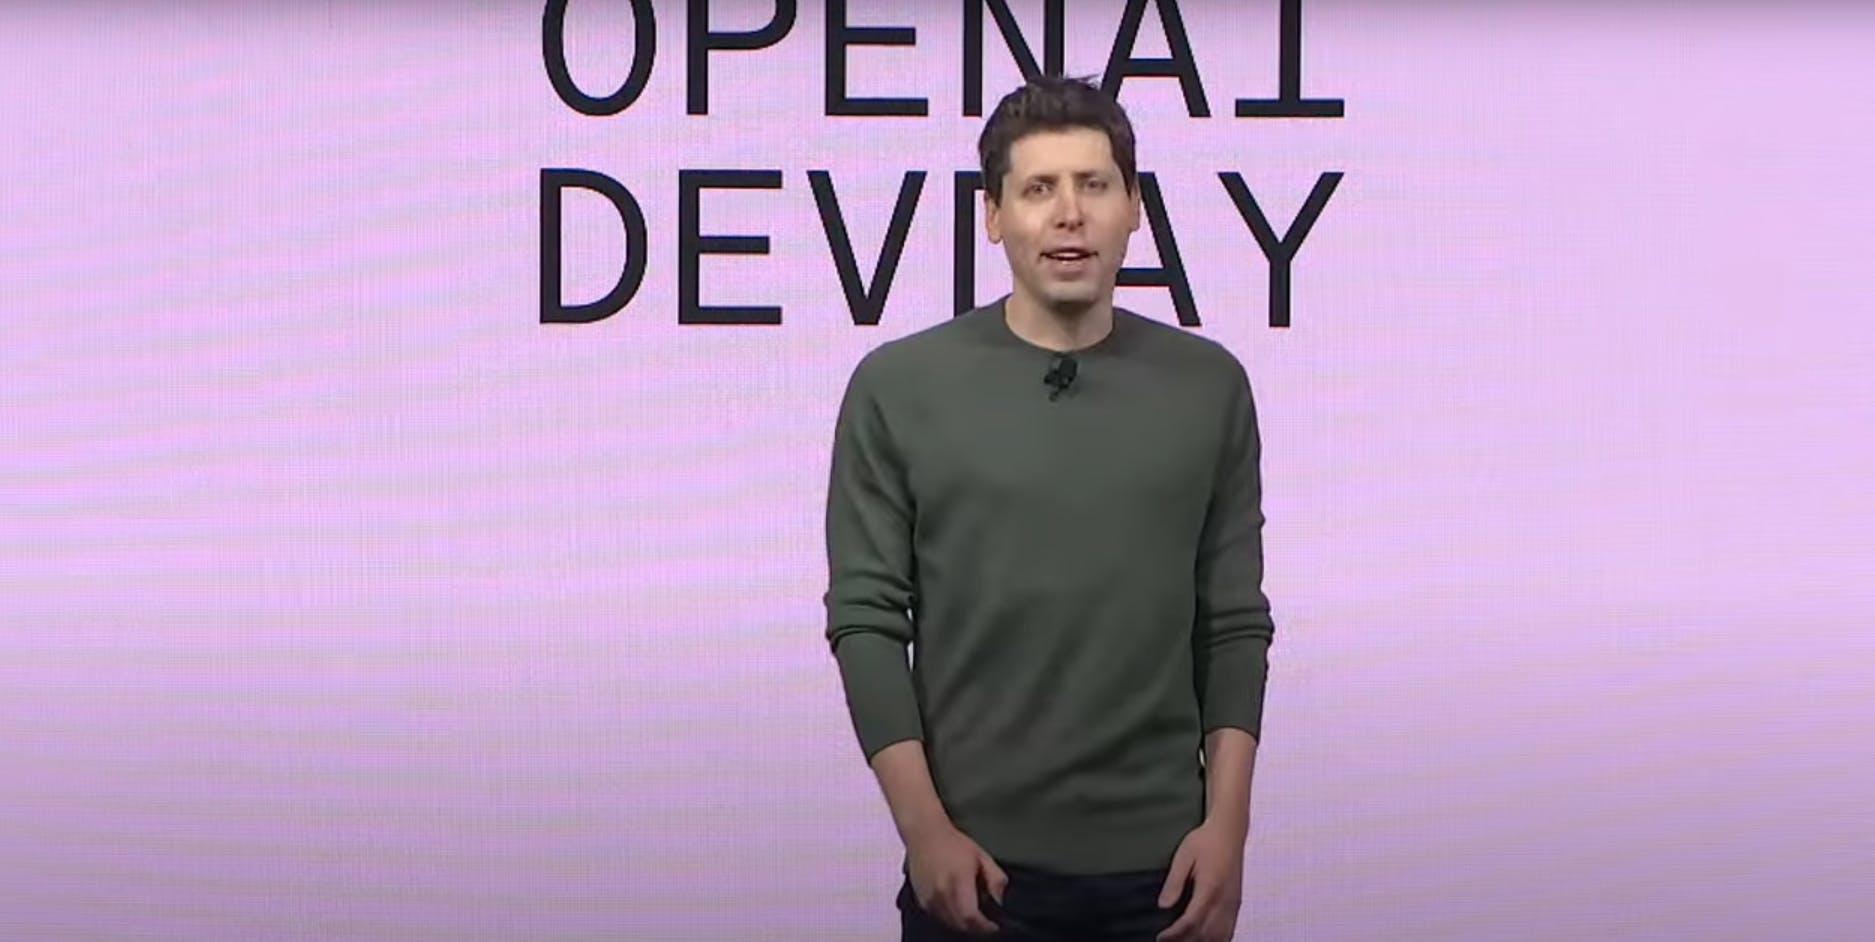 Youtube: OpenAI DevDay, Opening Keynote